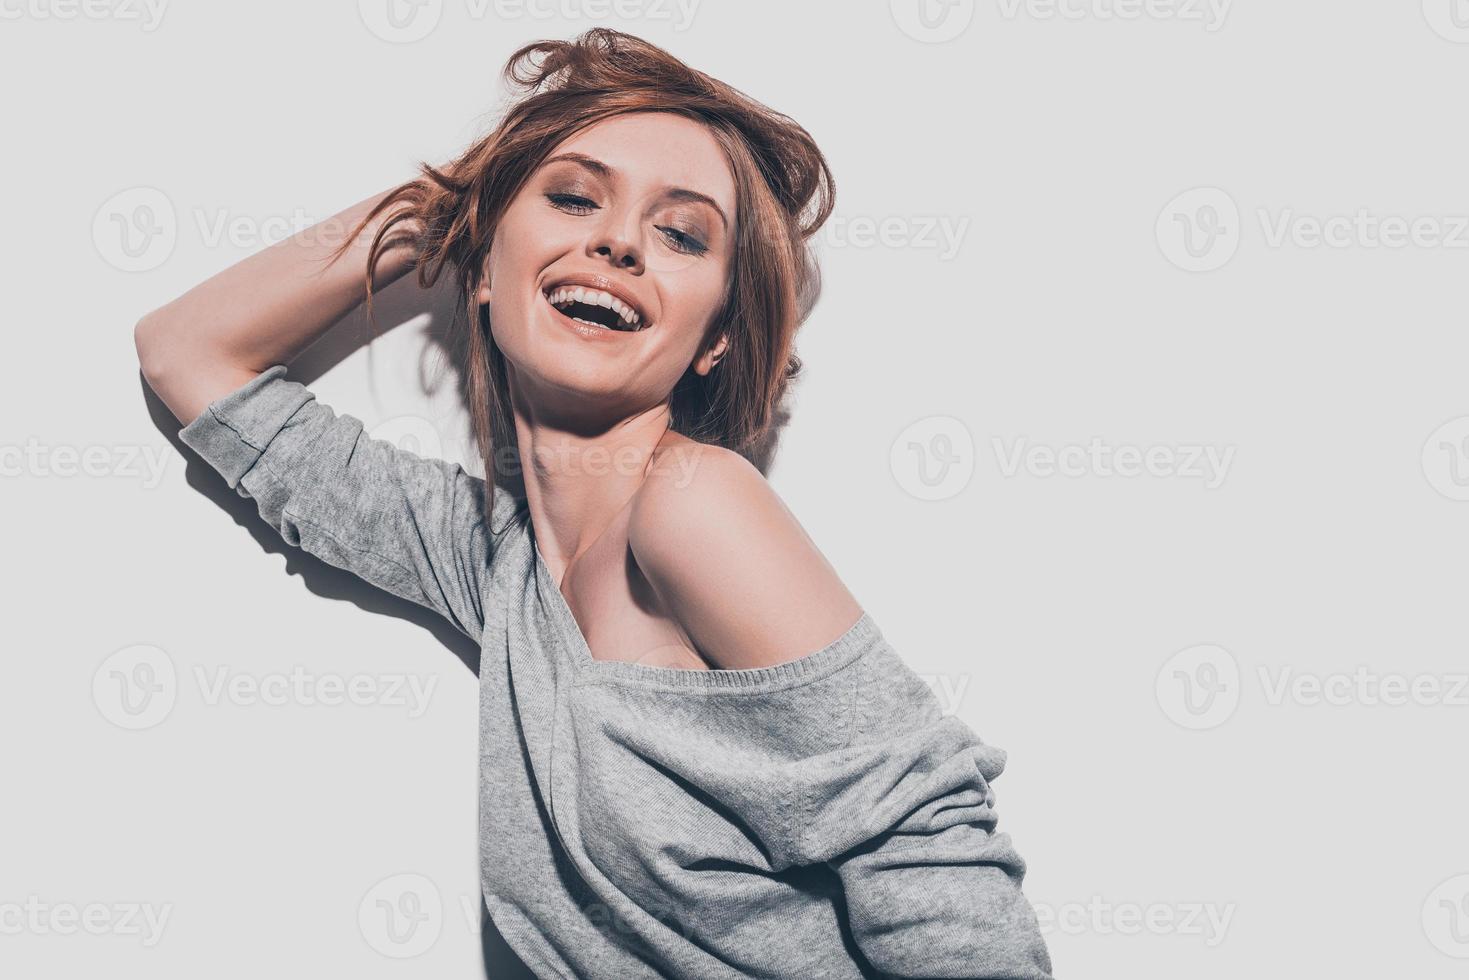 beleza feliz. mulher jovem e atraente sorridente segurando a mão no cabelo e mantendo os olhos fechados em pé contra um fundo cinza foto